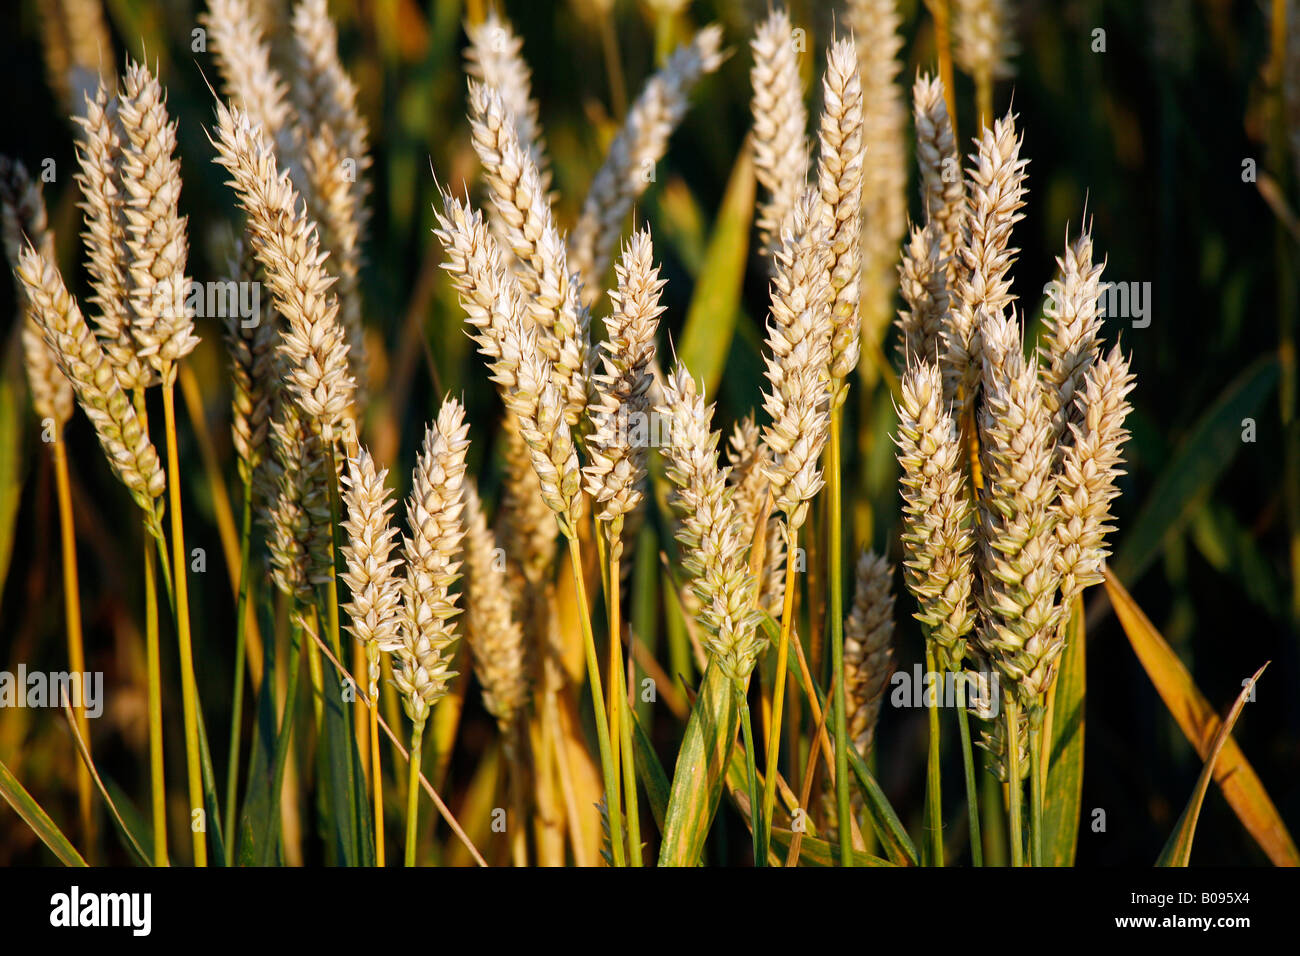 Ears of wheat in a wheat field Stock Photo